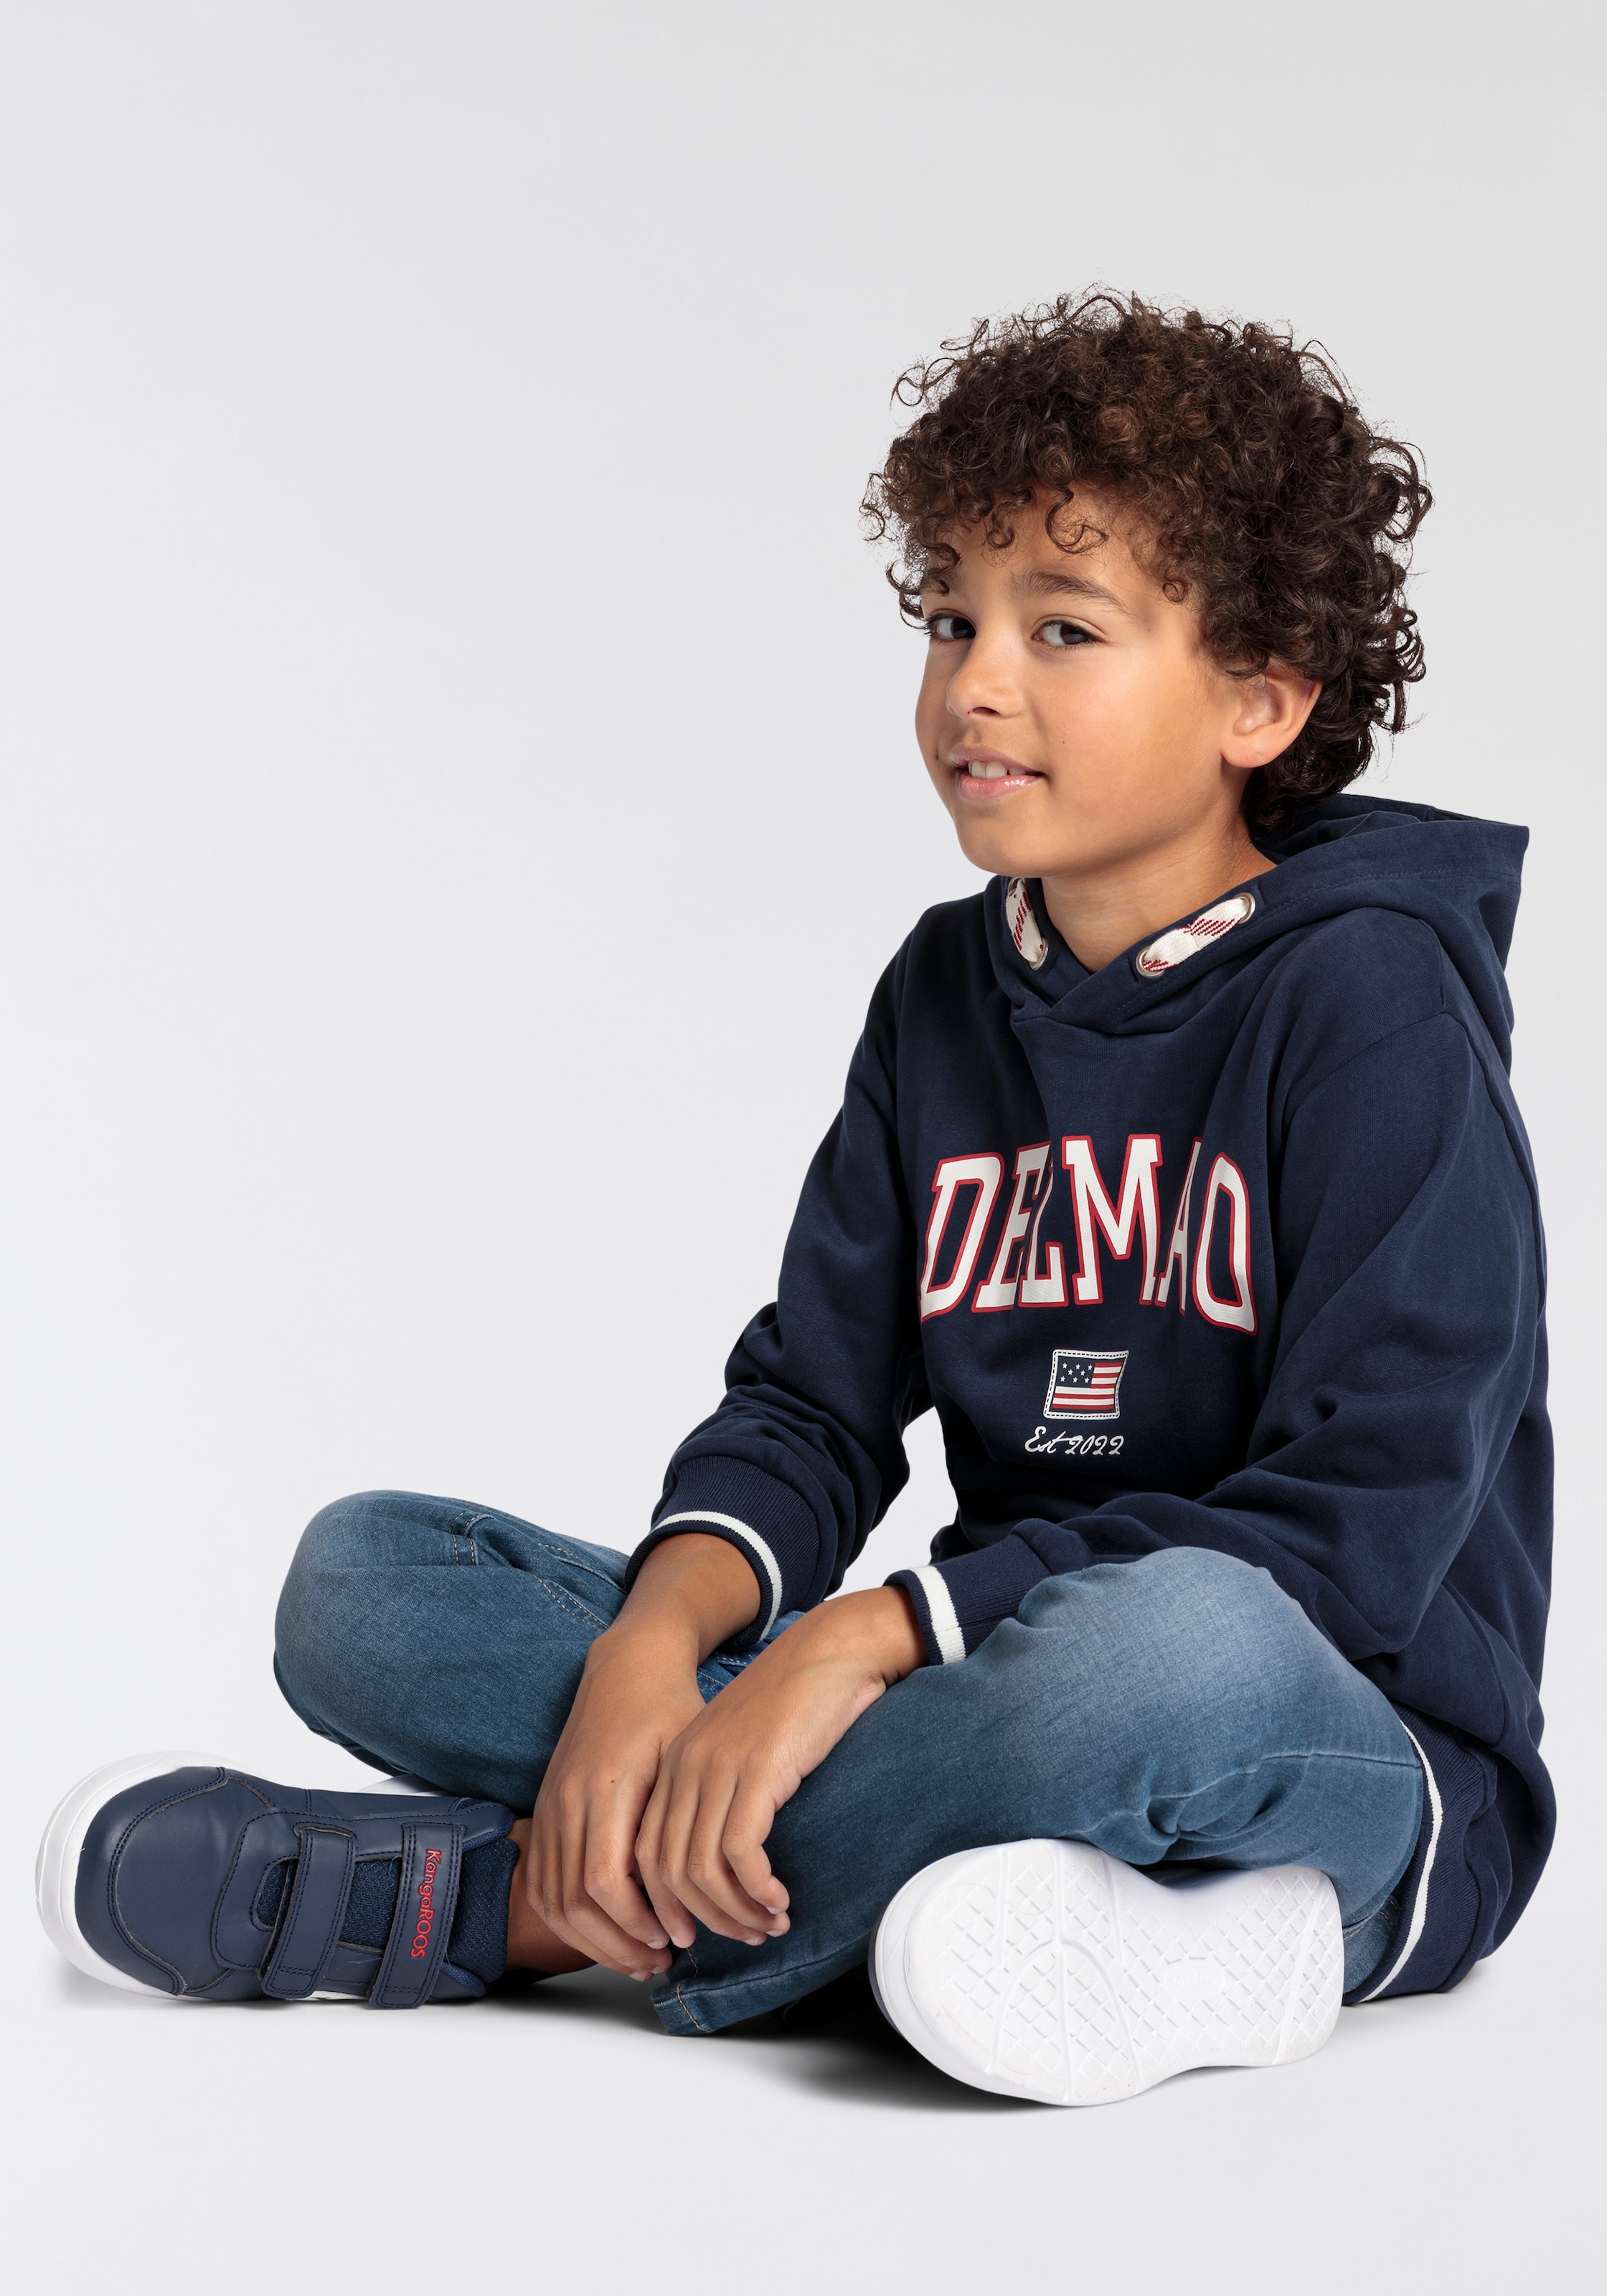 Jungen«, Kapuzensweatshirt im DELMAO Logo-Sweathirt Marke bestellen Online-Shop »für neuen Delmao der